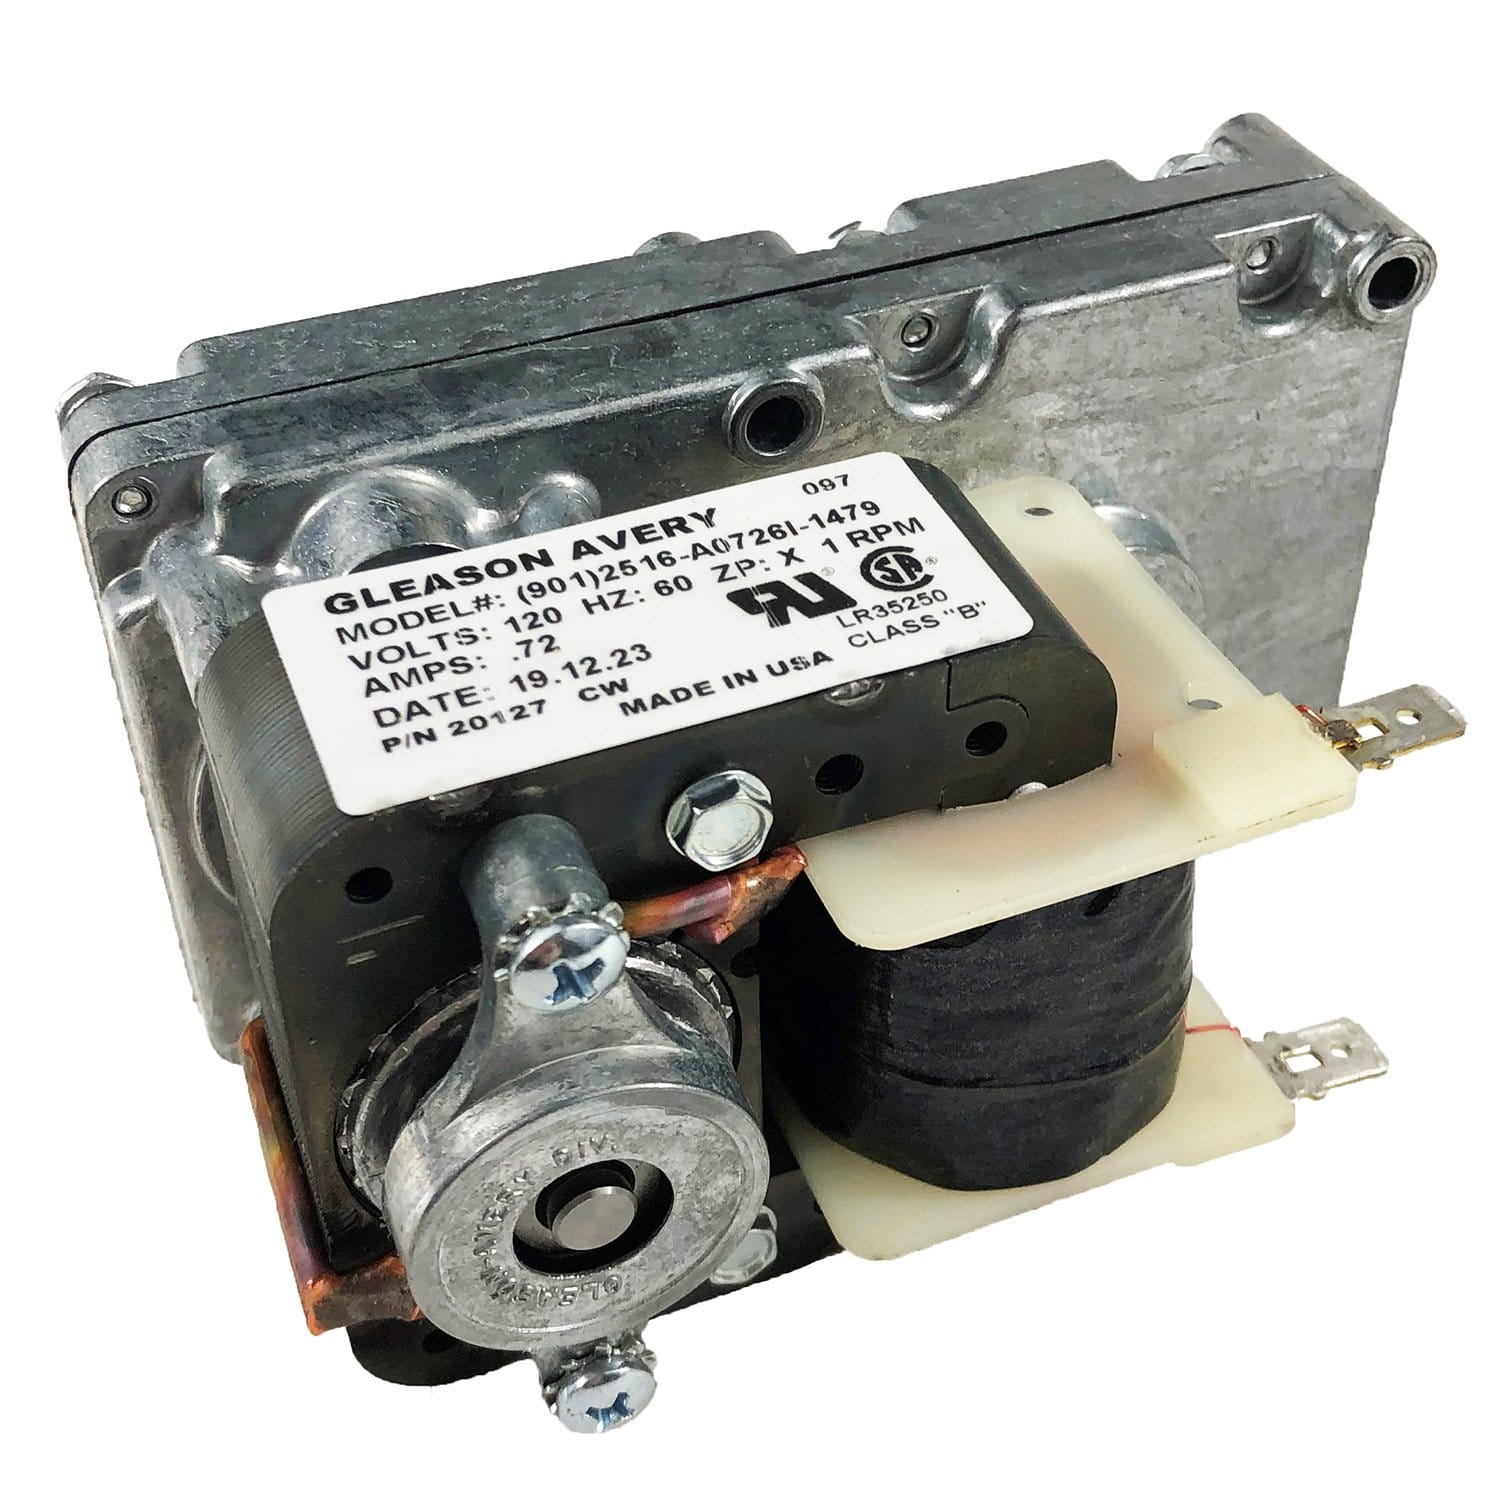 NBK 20127 Auger Motor, 0.72A, 1 RPM, CW Replaces OEM Part # 12046300